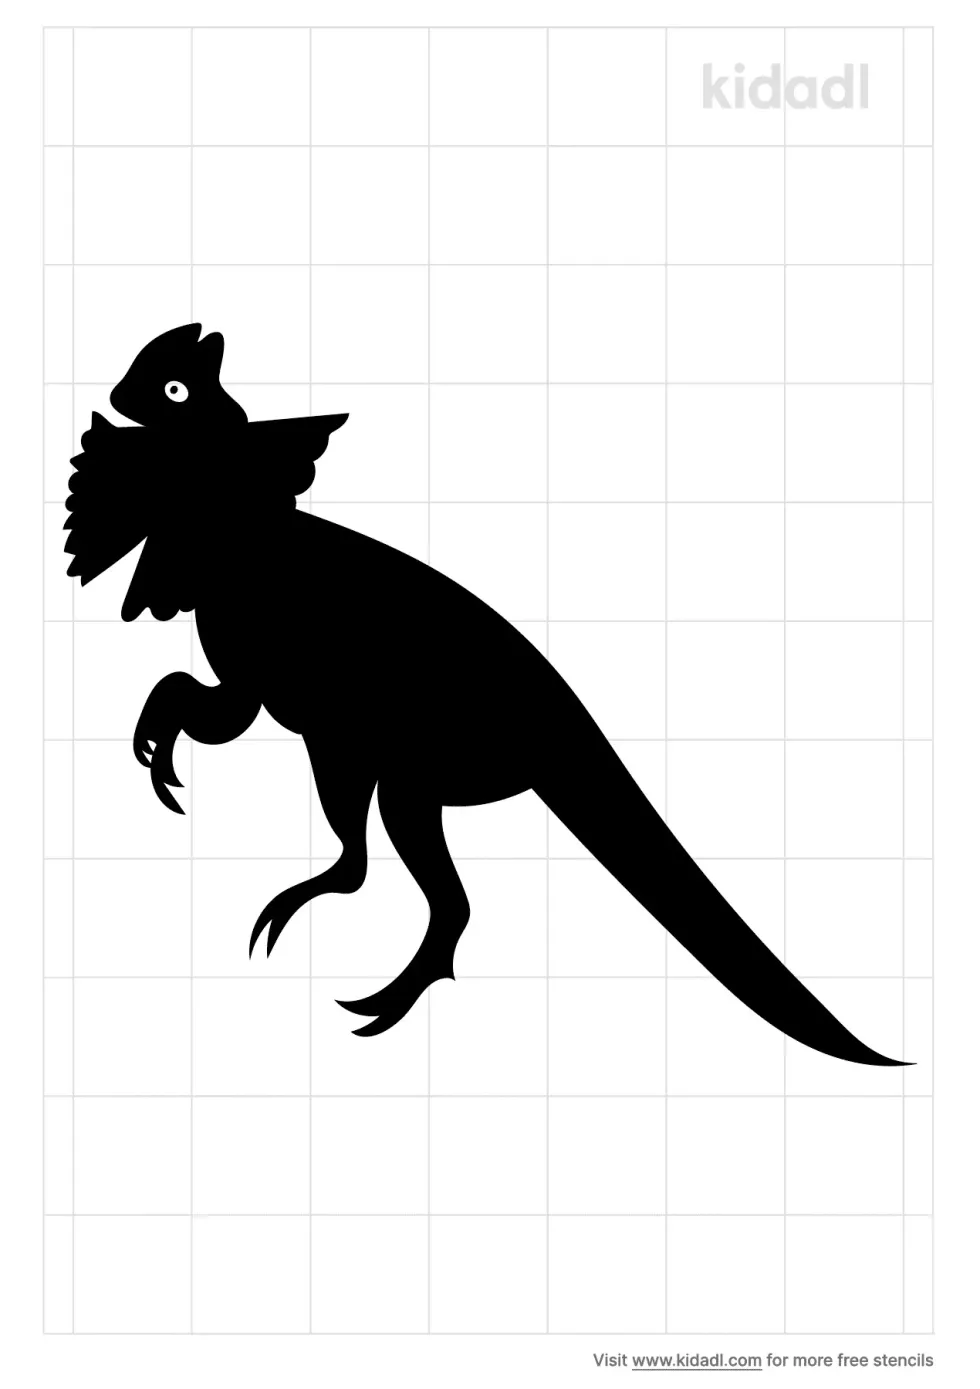 Frill Necked Dinosaur Stencil